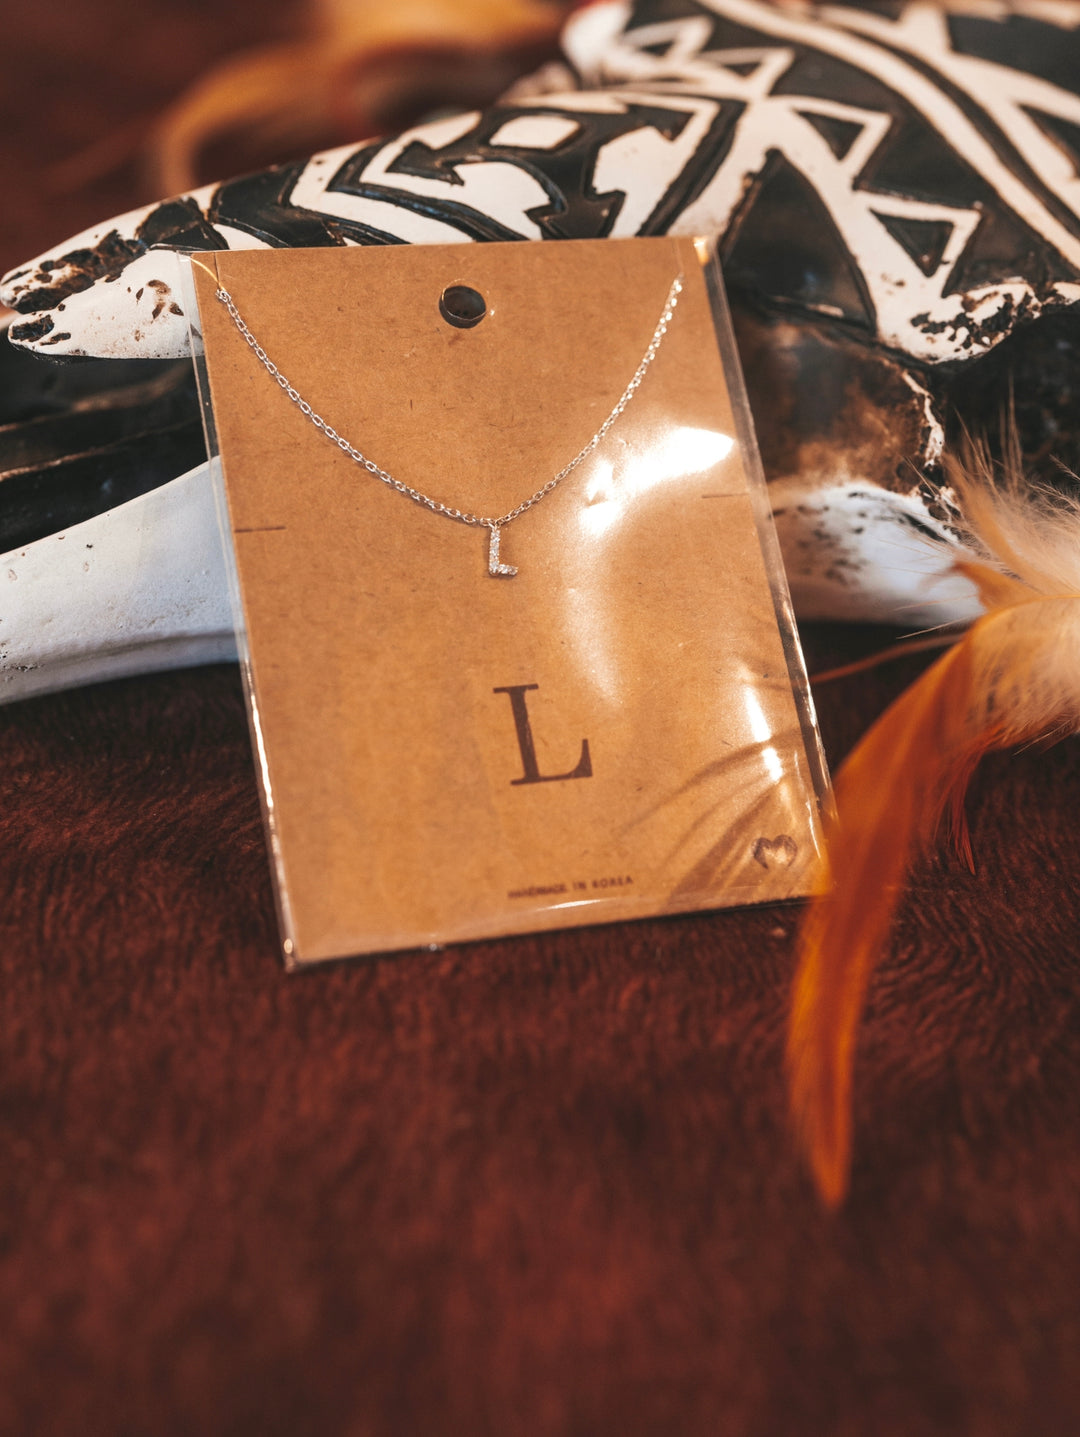 L Letter Necklace